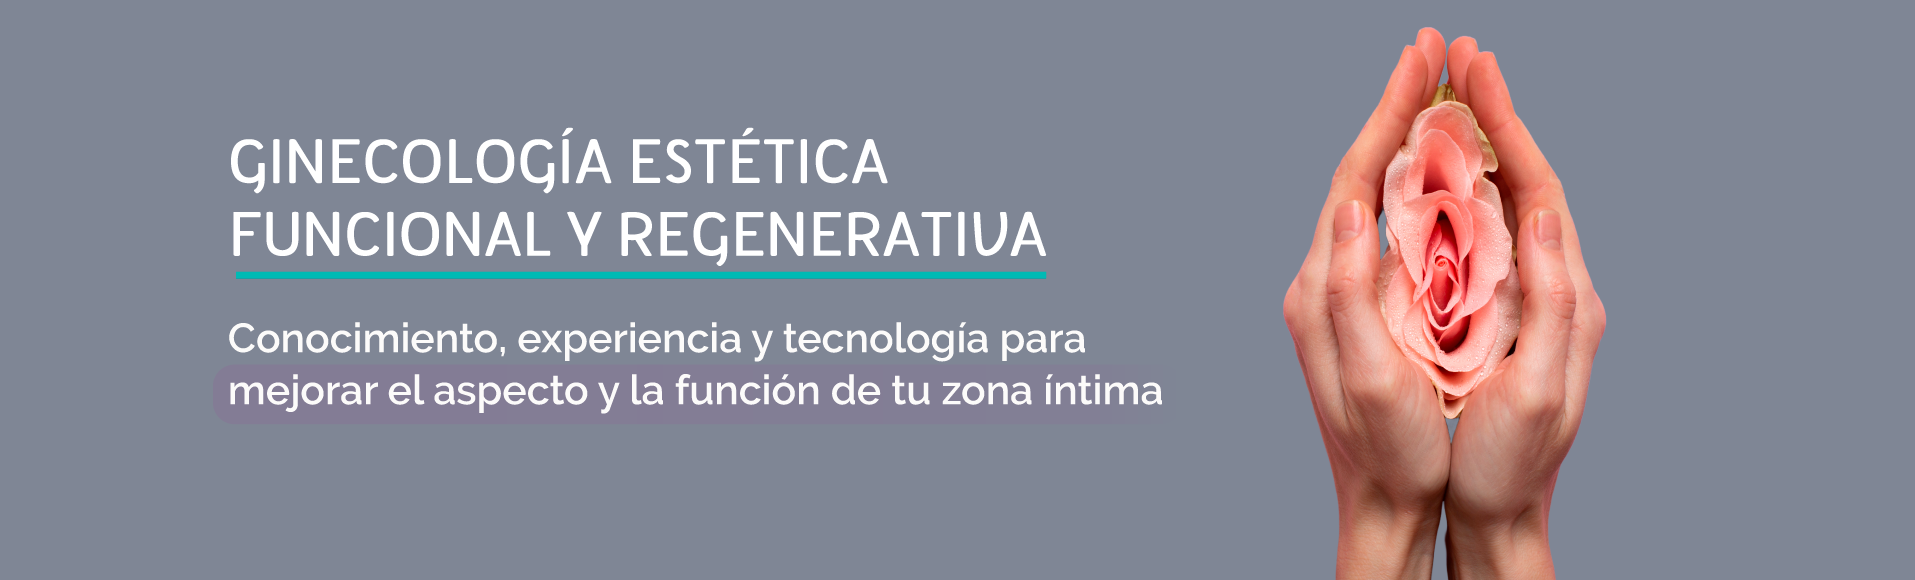 Ginecologia Estetica Y Regenerativa Bogota